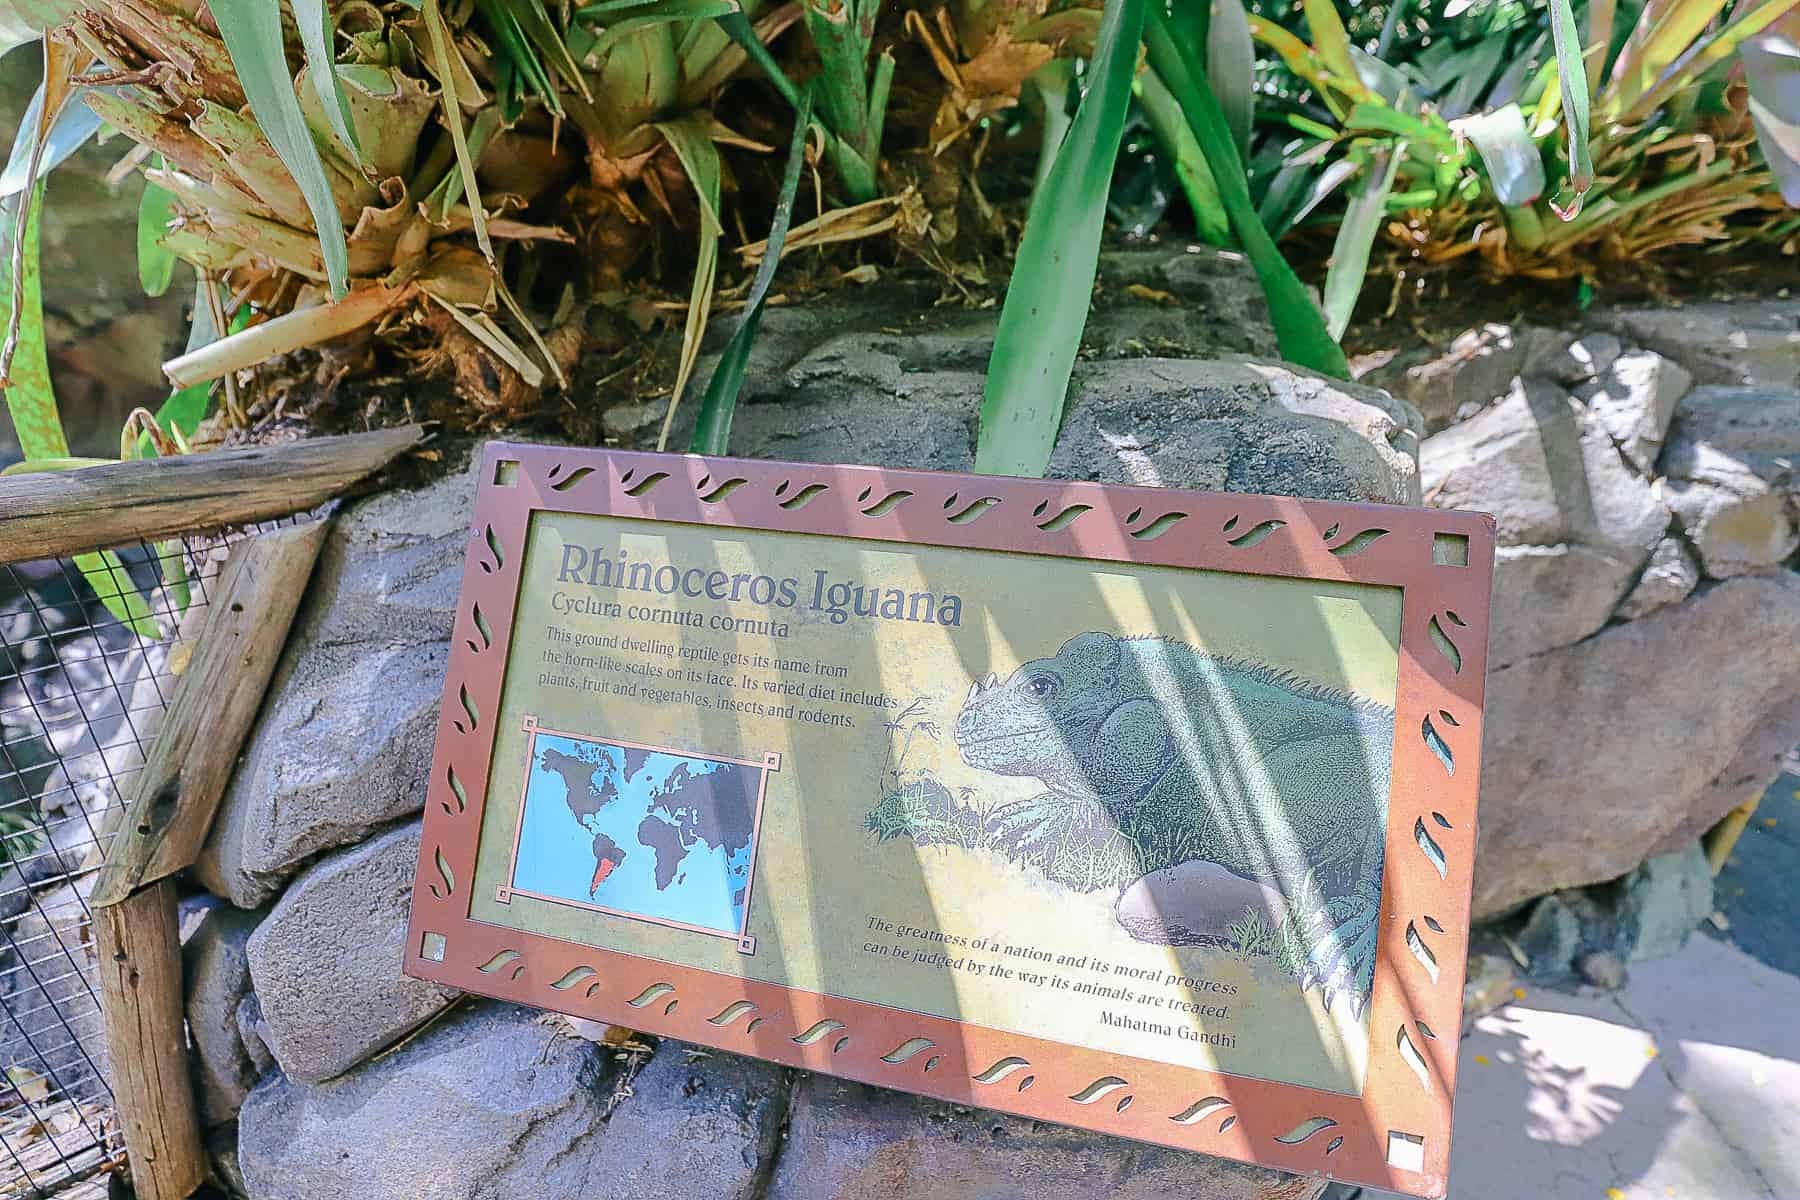 Rhinoceros Iguana signage 